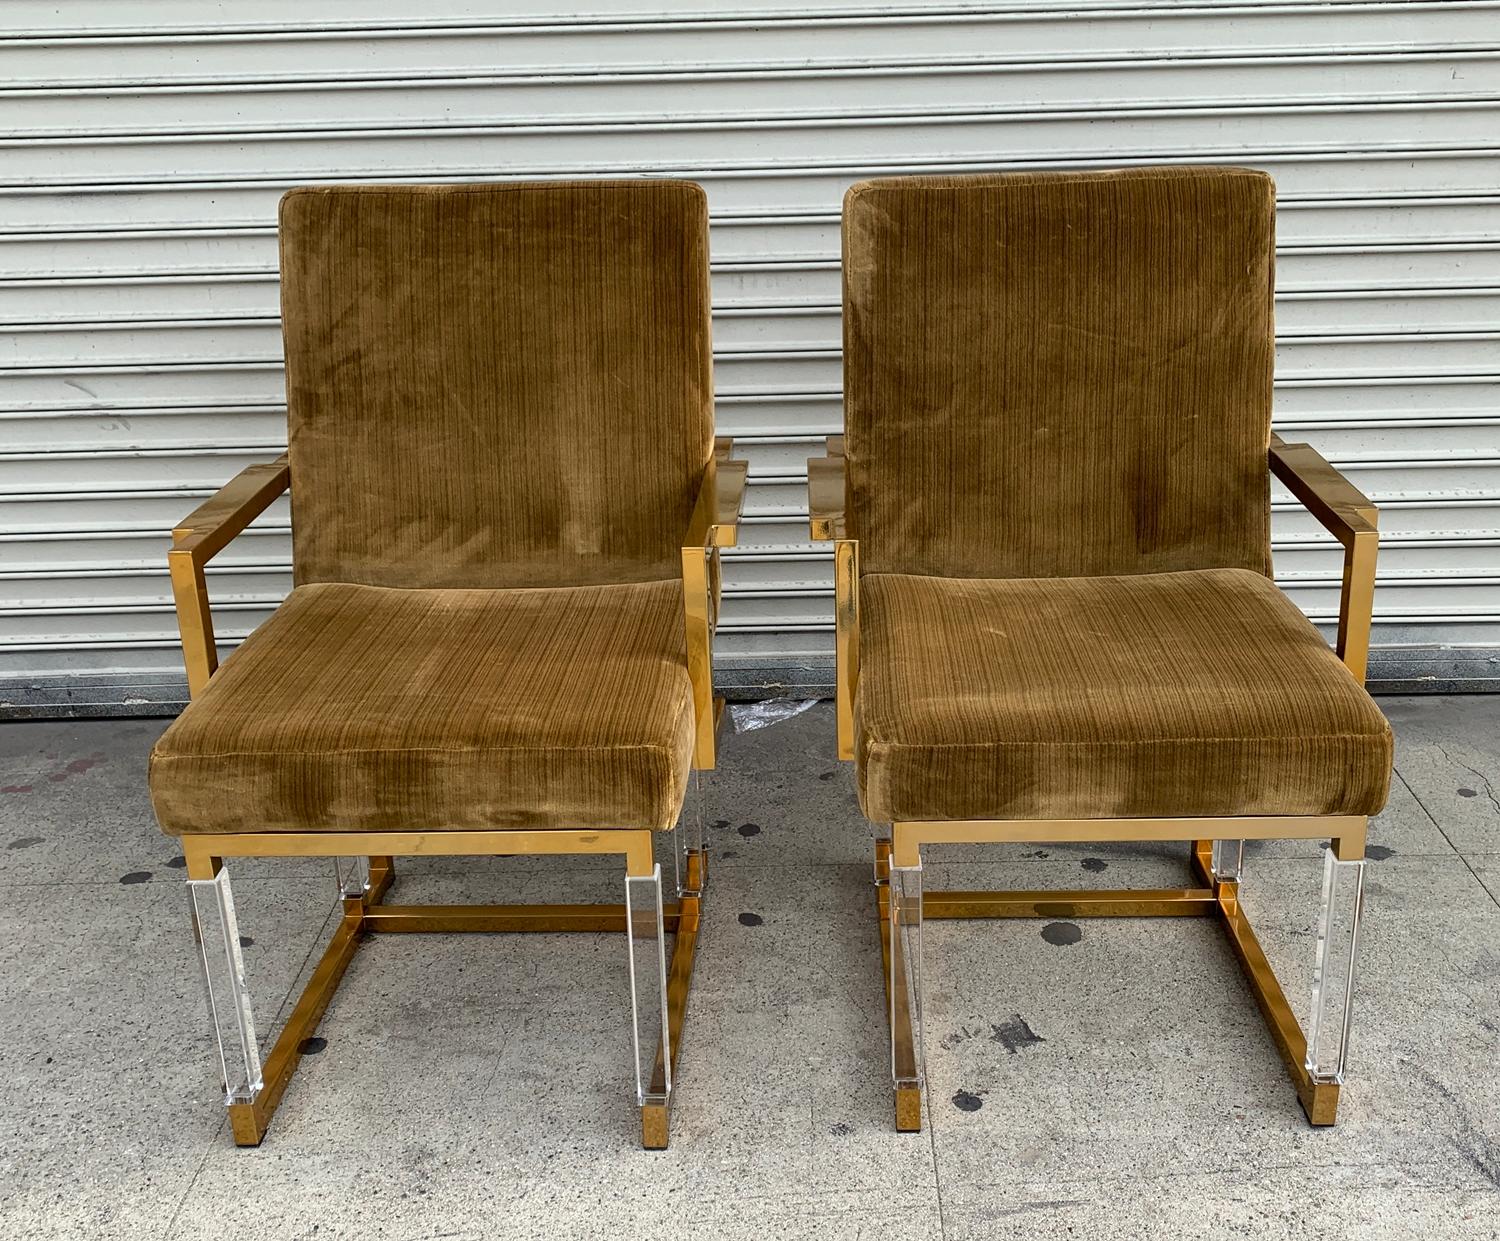 Voici nos exquis fauteuils Metric en Lucite et laiton, méticuleusement fabriqués par le célèbre designer Charles Hollis Jones et ornés de sa signature. Ces chaises luxueuses constituent un ajout étonnant à tout espace, alliant élégance, modernité et